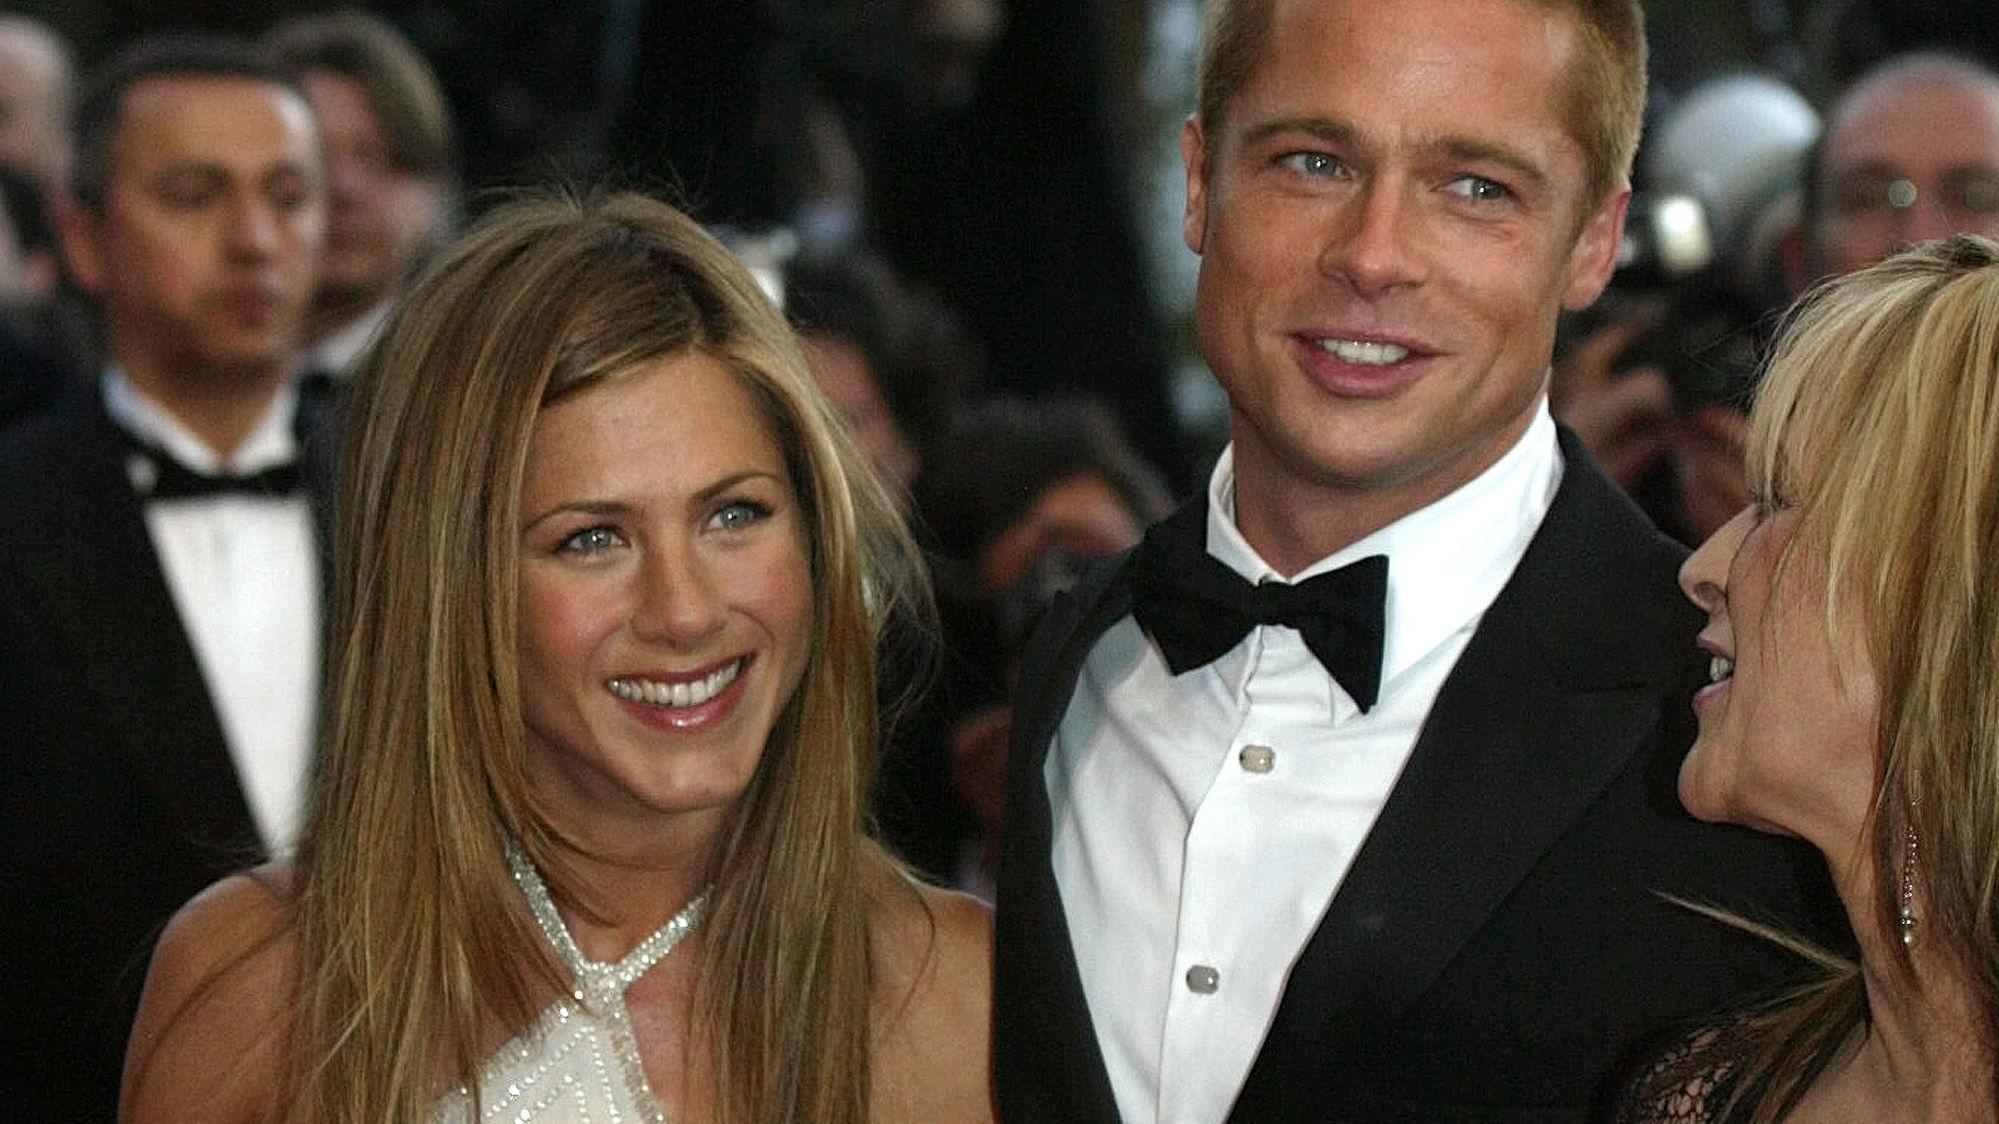 FRISYREN ALLE VILLE HA: Jennifer Aniston avbildet med daværende kjæreste, Brad Pitt, i 2004. Foto: AP